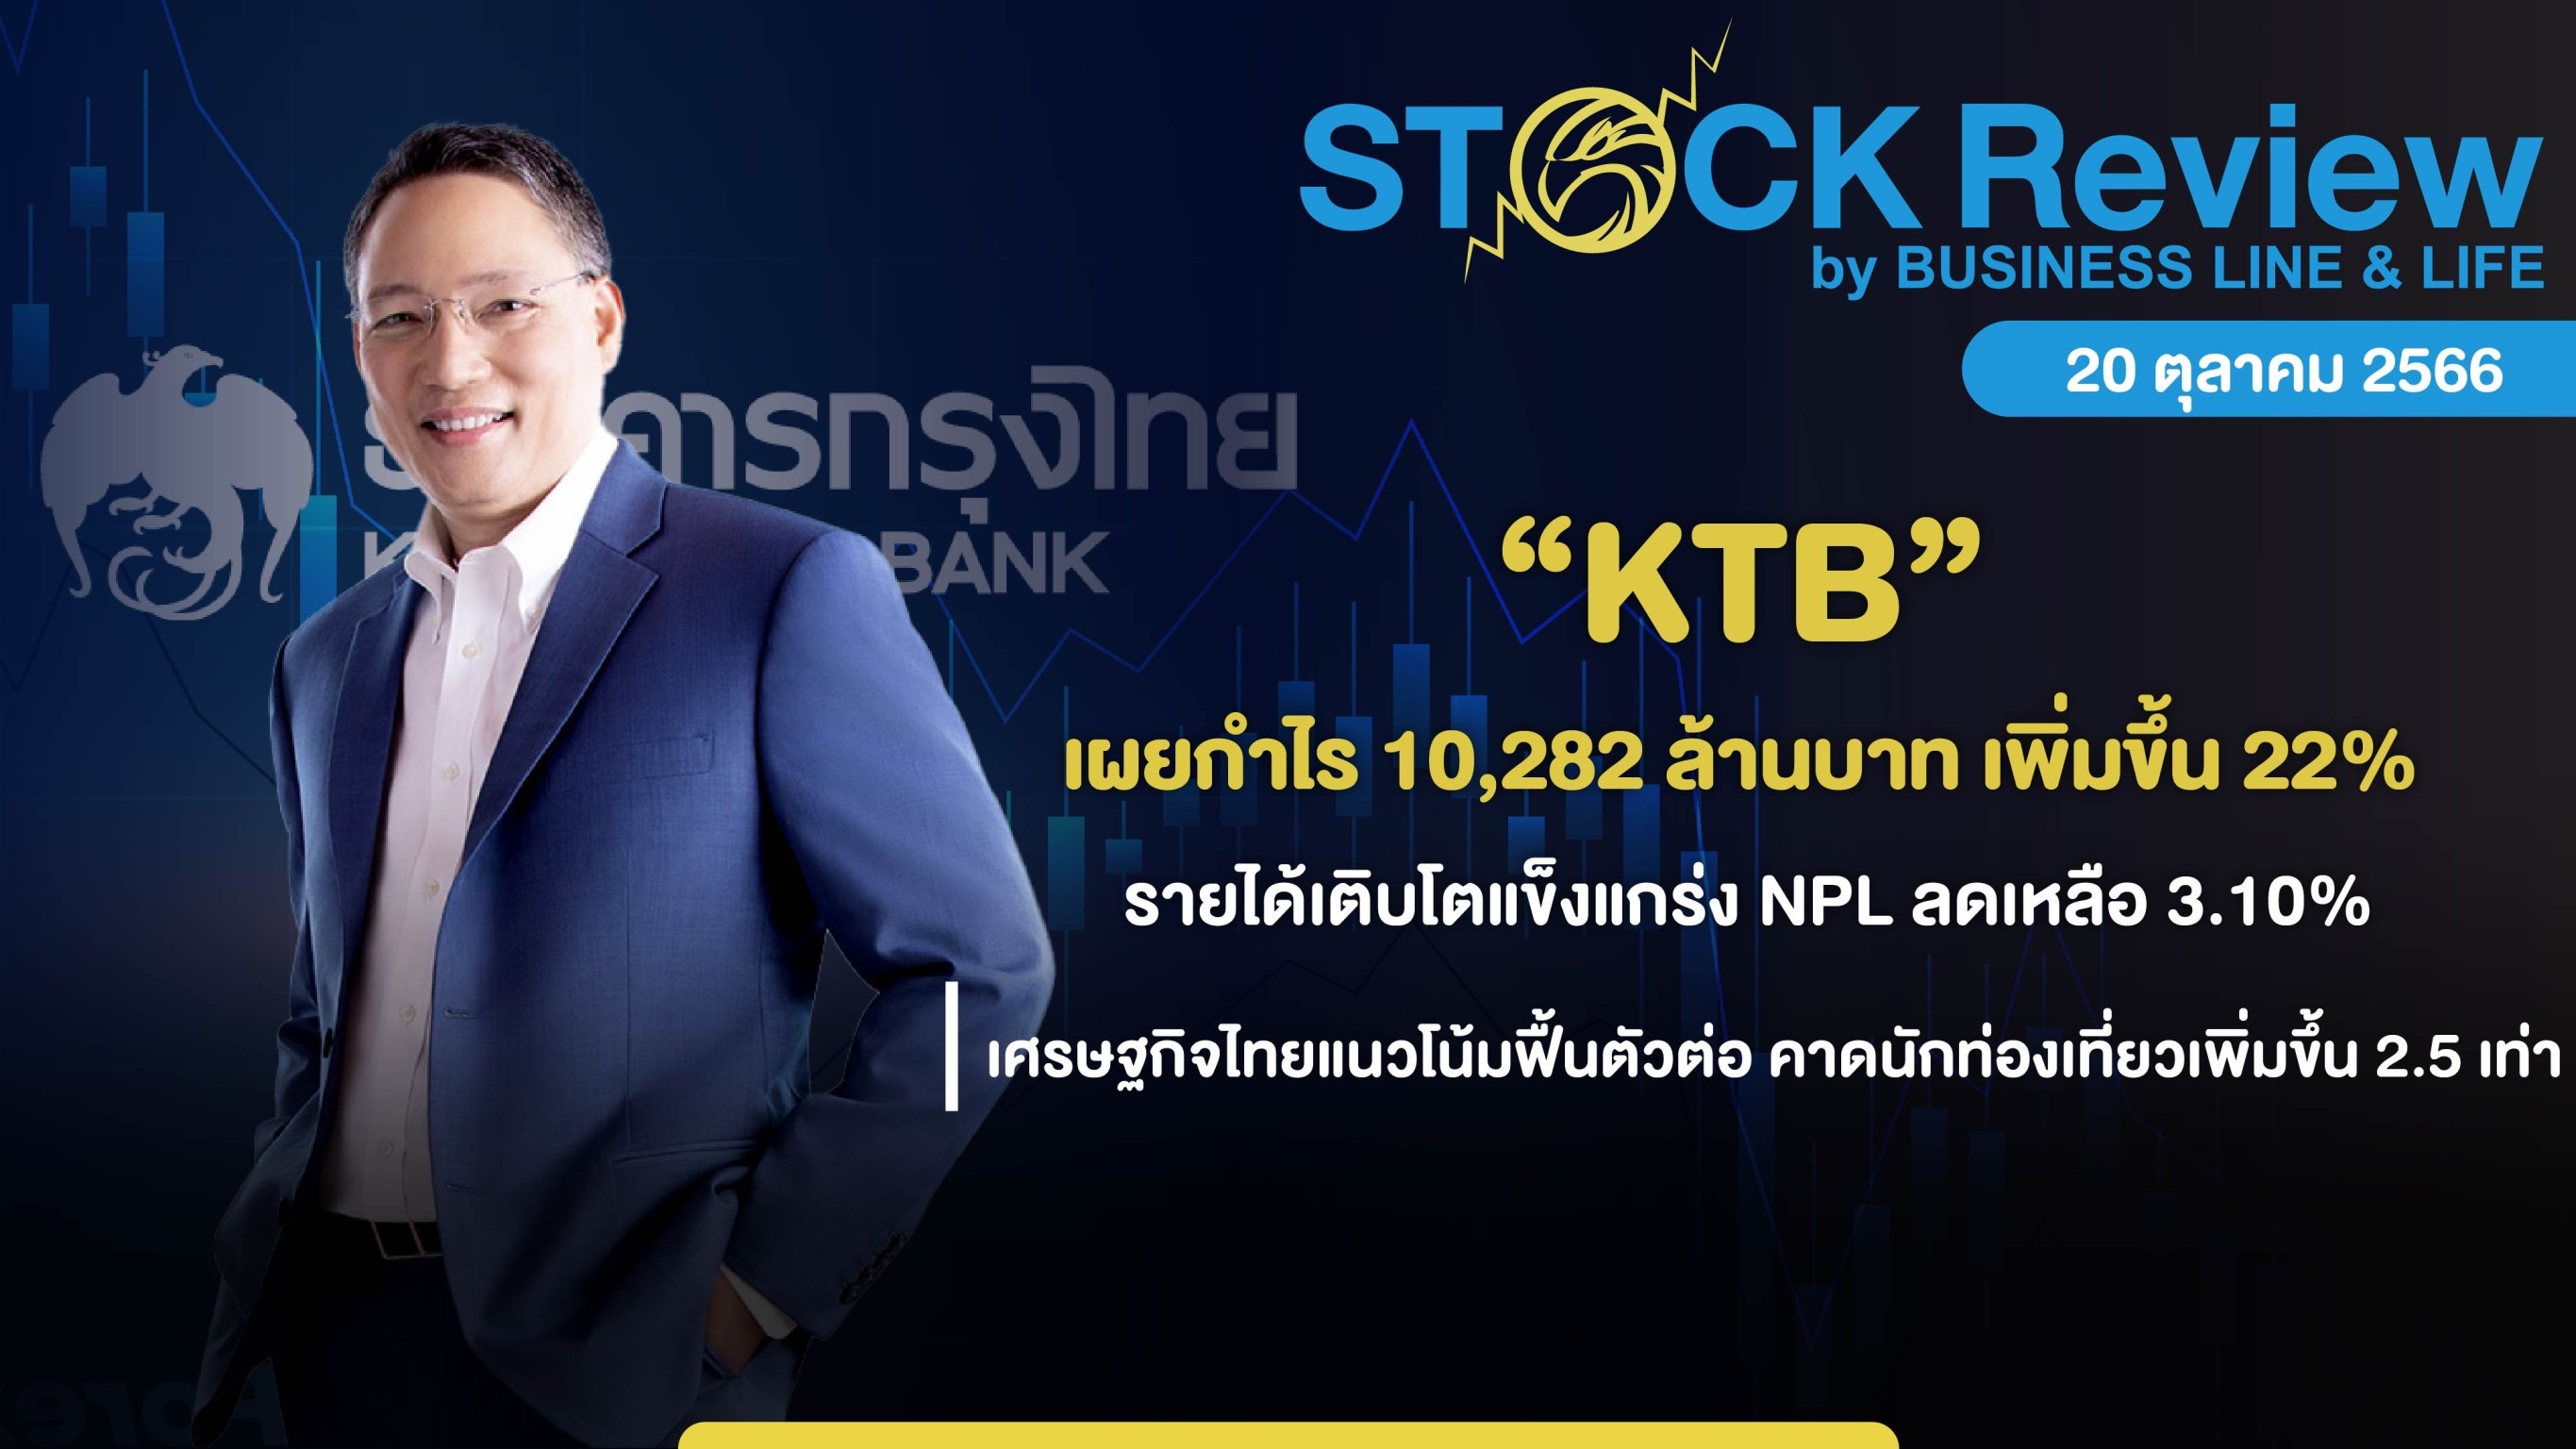 “กรุงไทย” เผยกำไร Q3/66 10,282 ล้านบาท เพิ่มขึ้น 22%